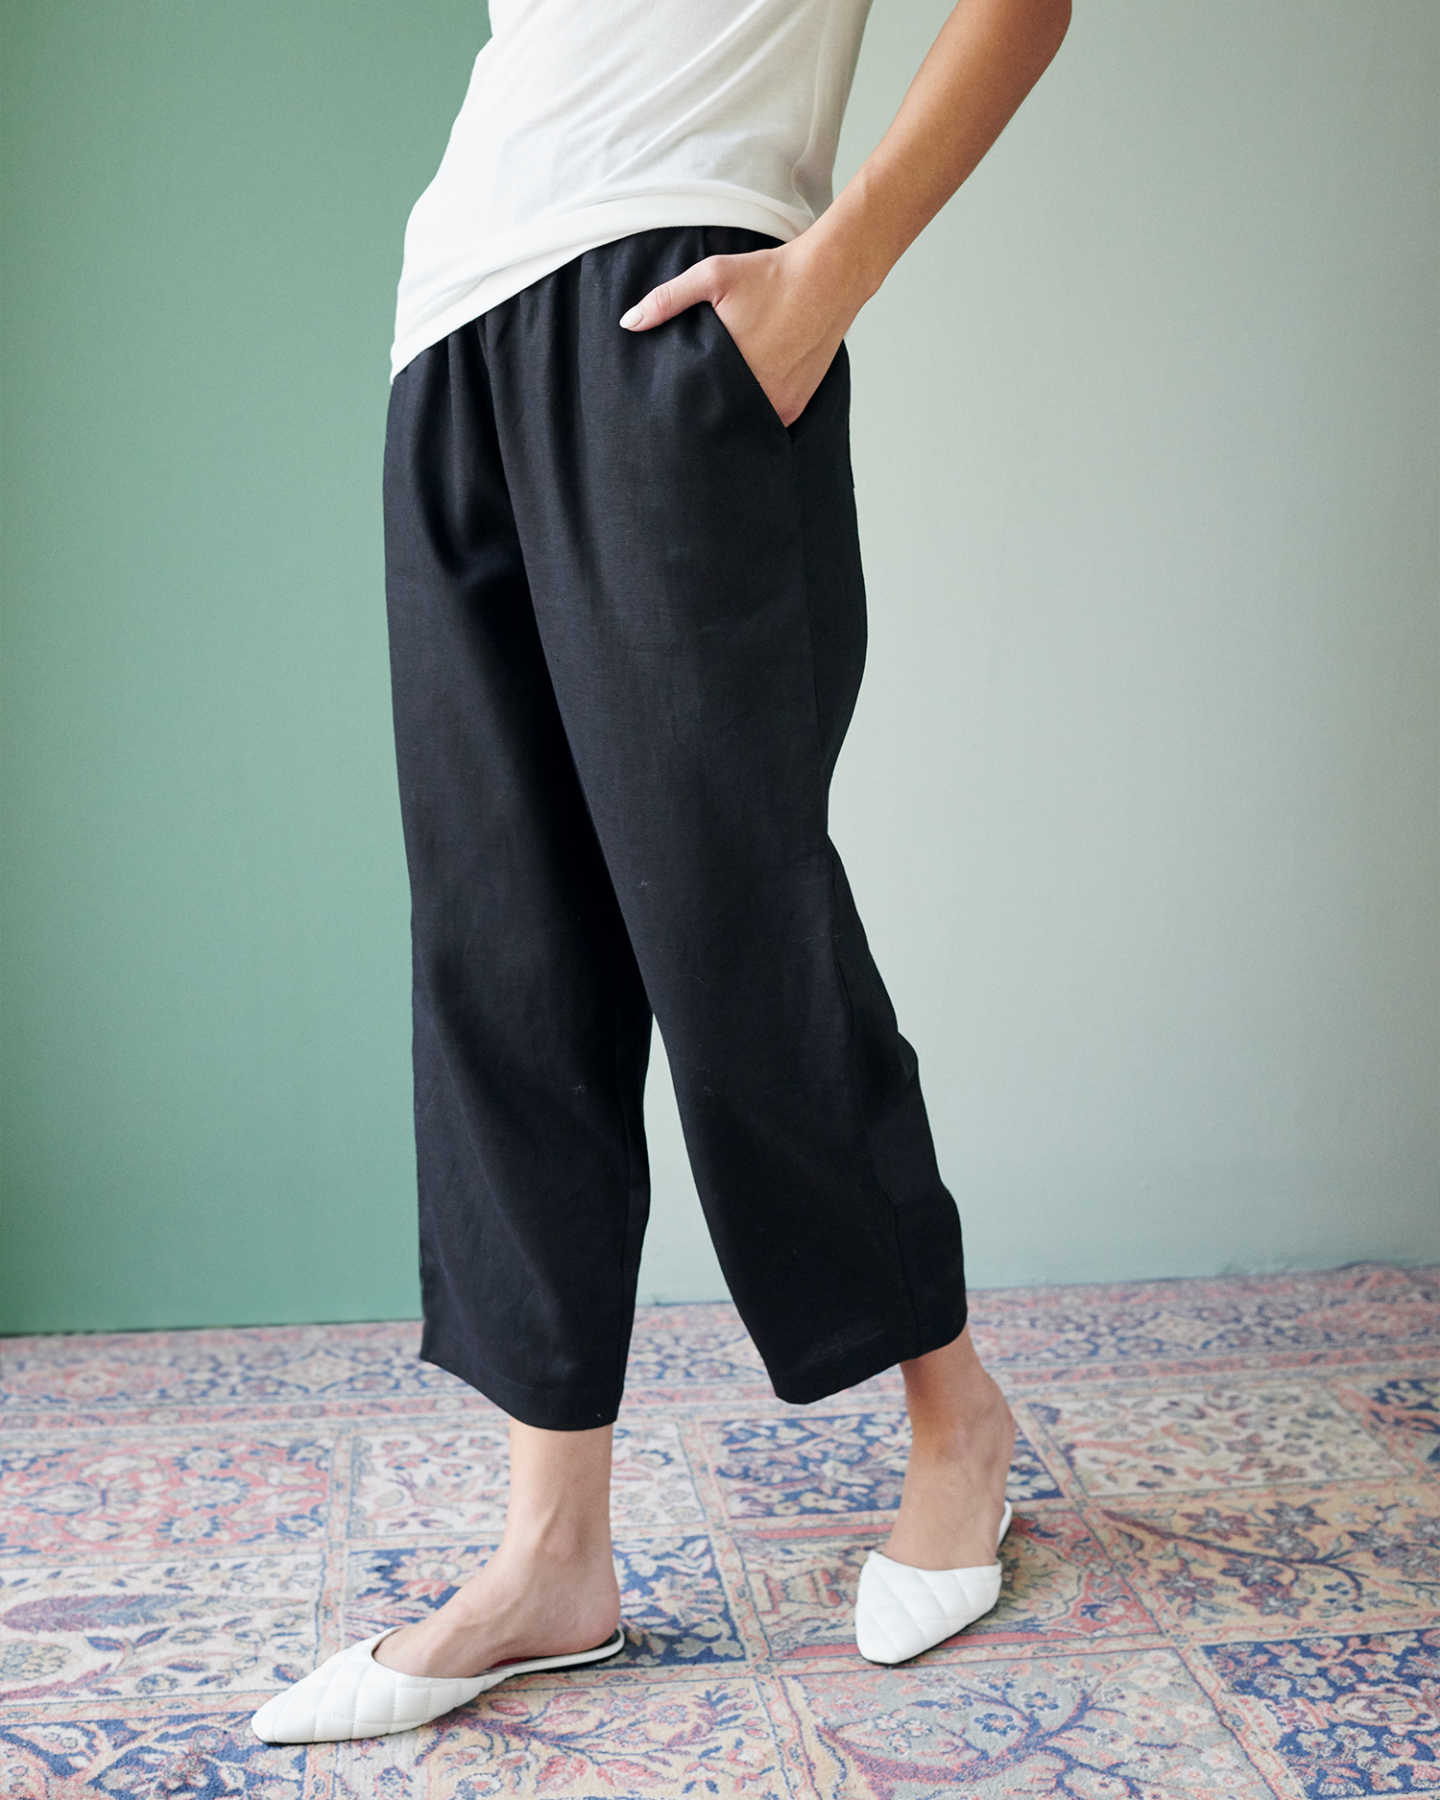 Pair With - 100% European Linen Pants - Black